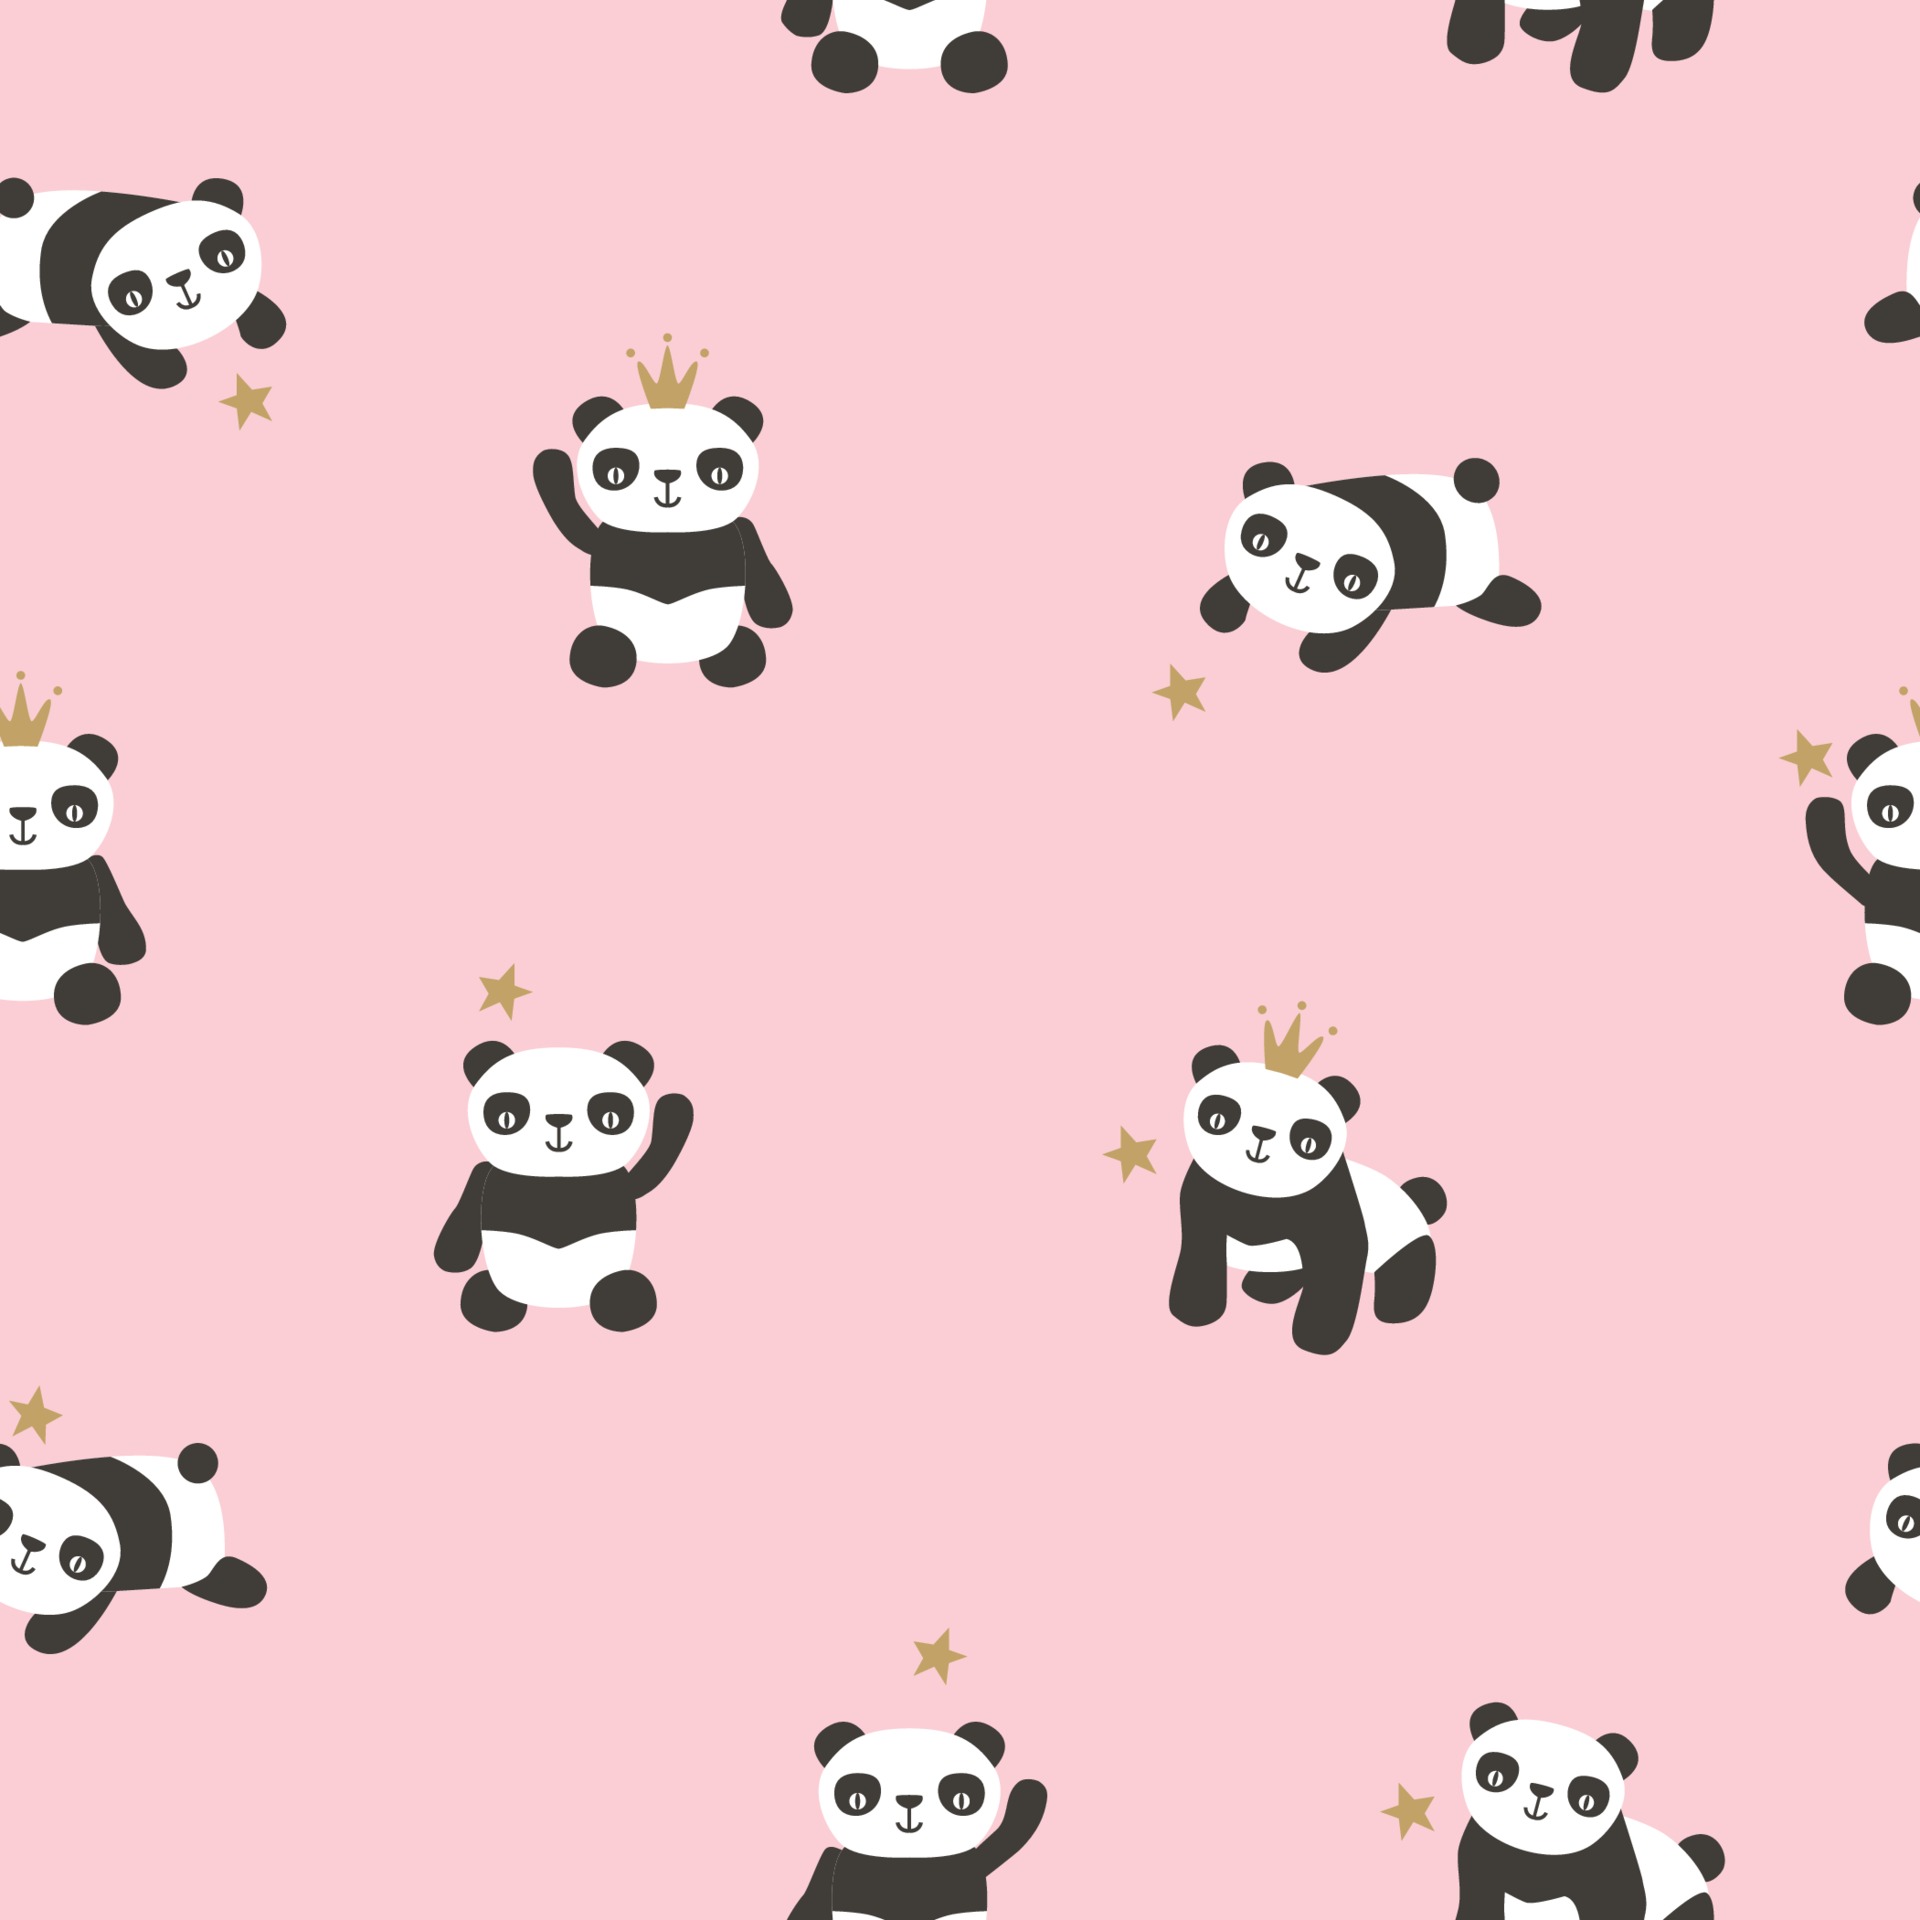 Padrão Sem Emenda Bonito Do Panda. Fundo Azul Do Vetor Com O Rosto Branco  Kawaii Do Panda. Para O Papel De Parede Das Crianças, Tecido Royalty Free  SVG, Cliparts, Vetores, e Ilustrações